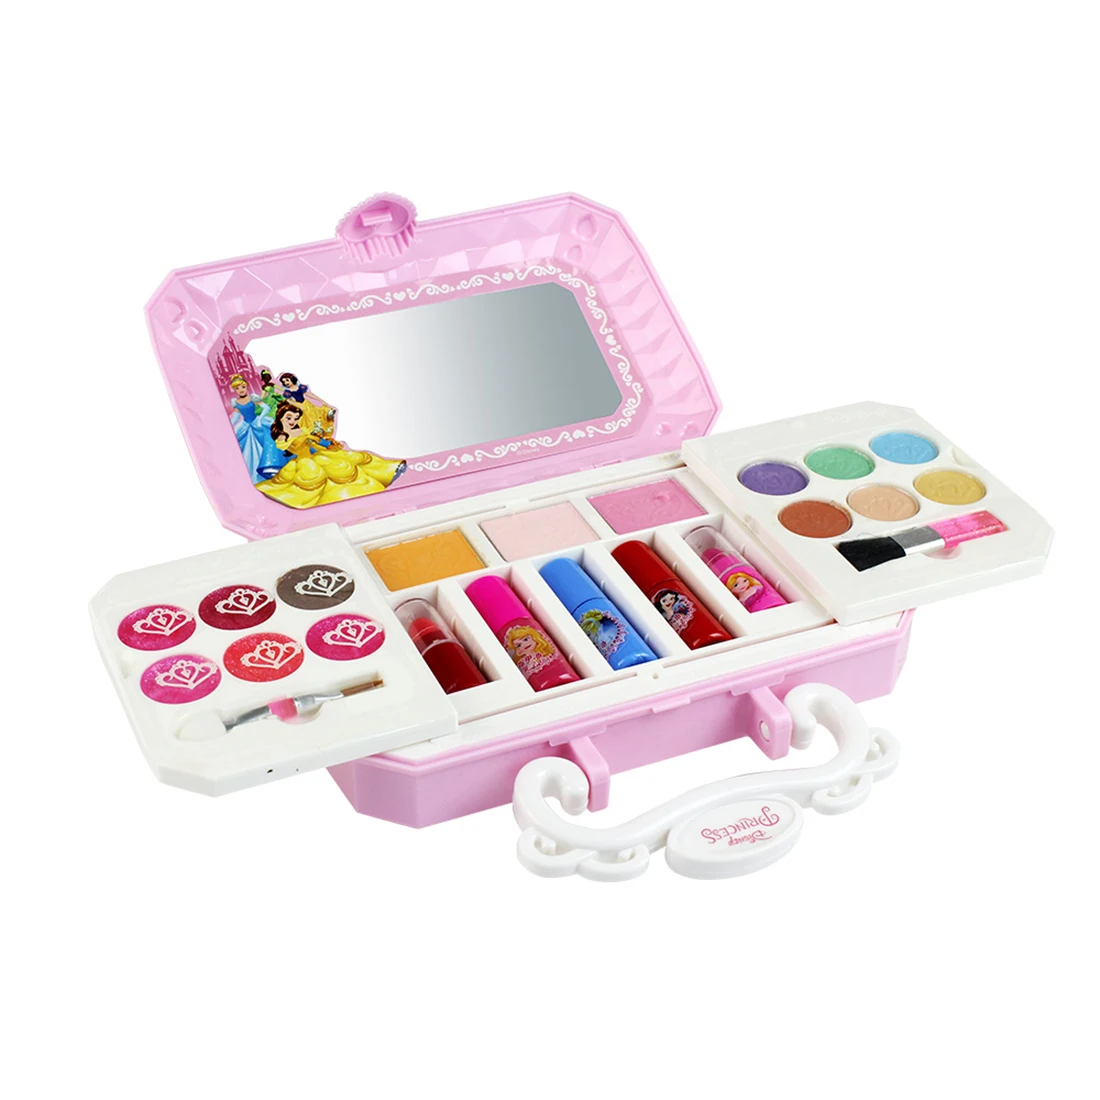 Детские ролевые игры для девочек макияж Обучение моющаяся Косметика Красота набор детский подарок на день рождения-D22606A